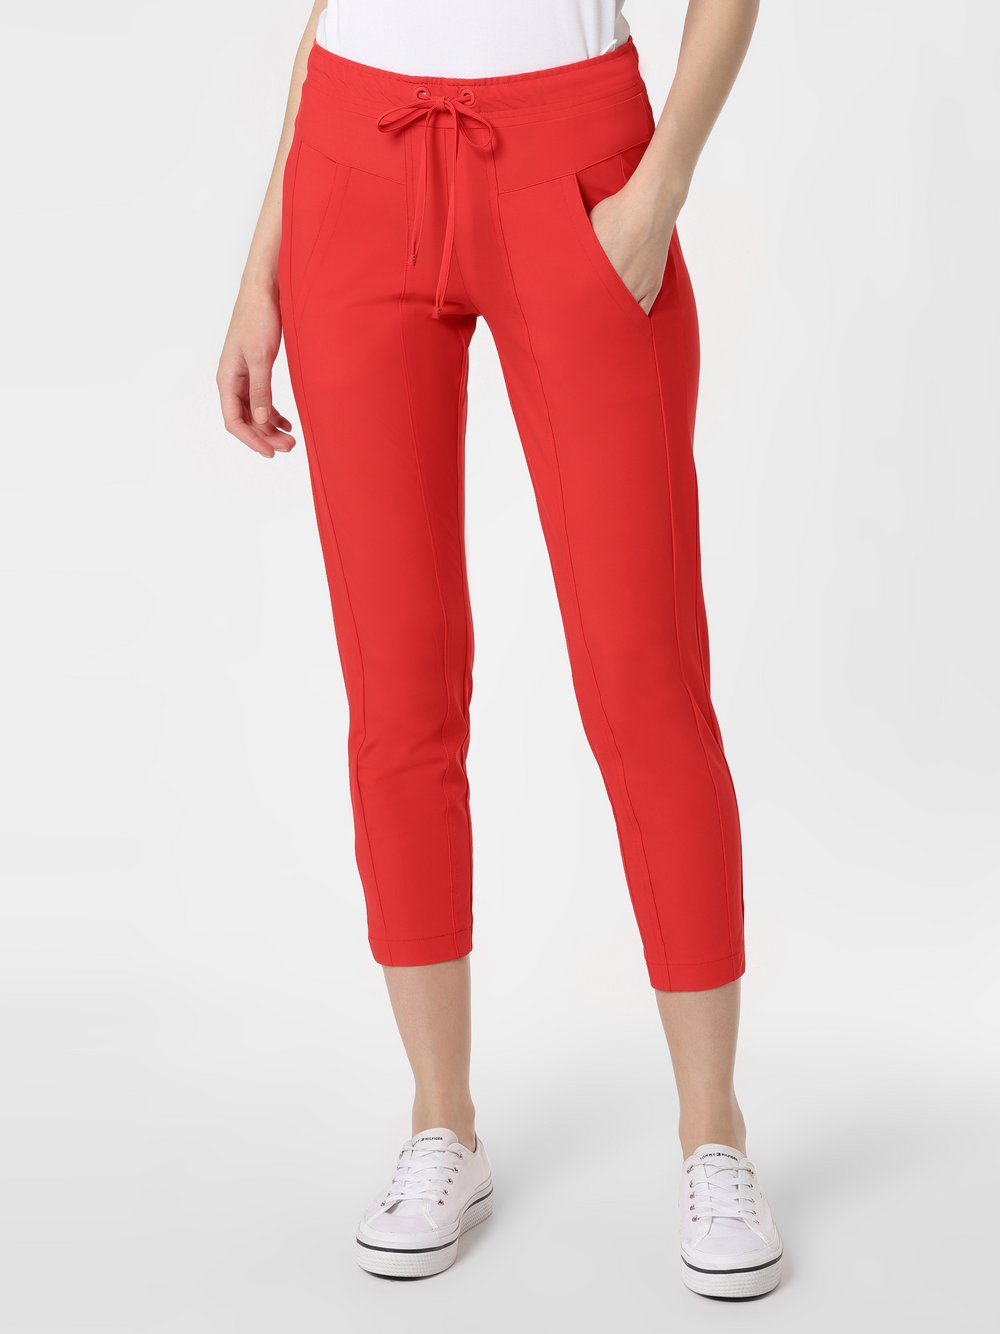 Cambio - Spodnie damskie – Jorden, czerwony